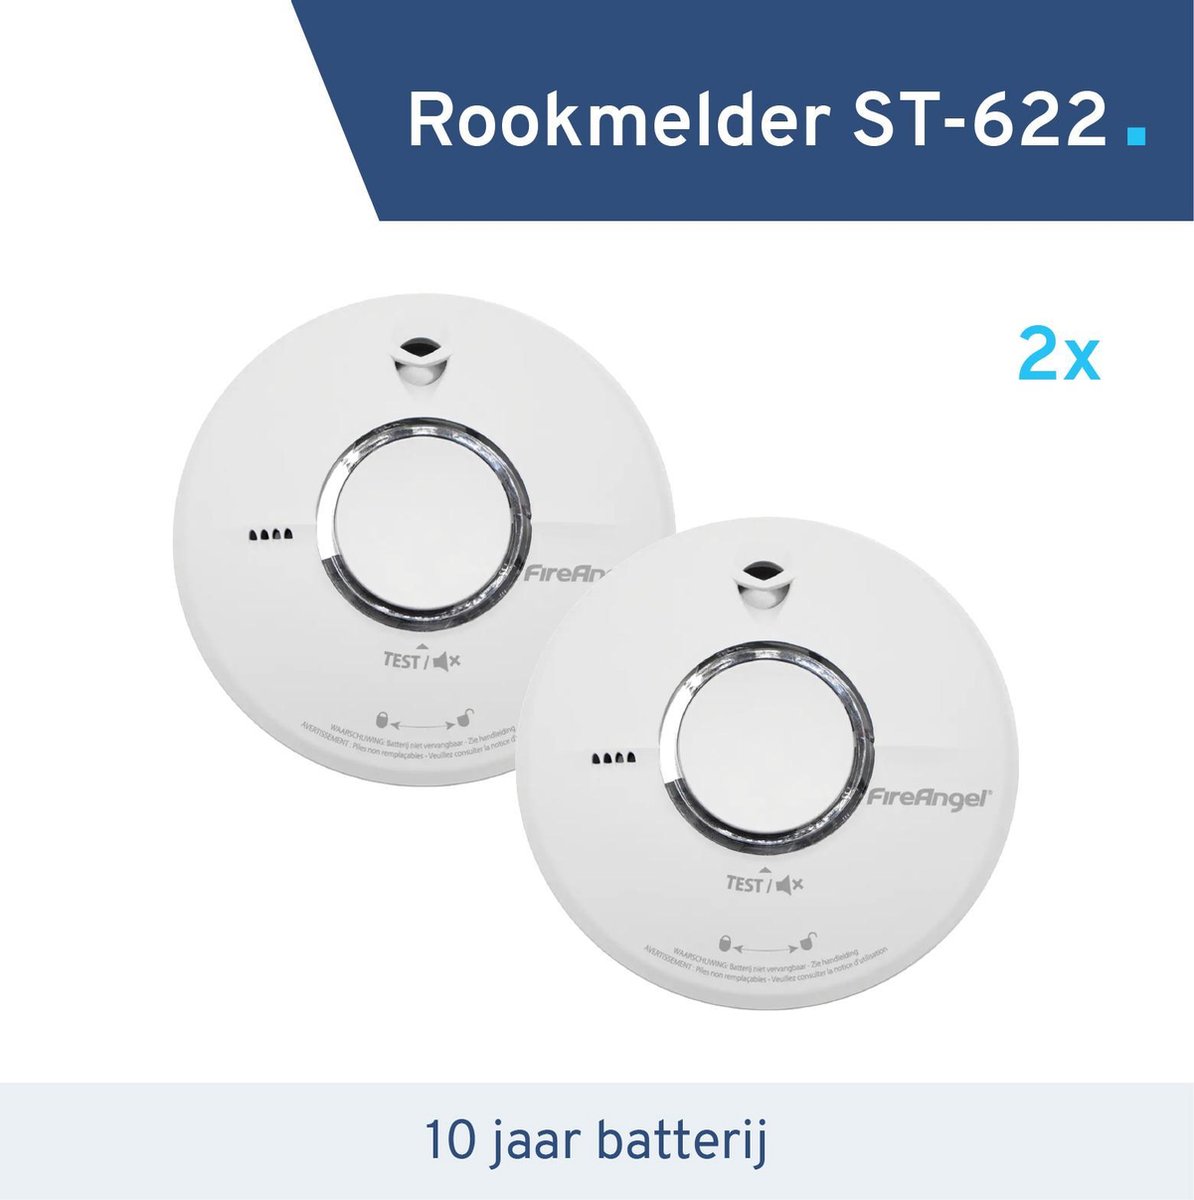 Duopack - Rookmelder FireAngel ST-622 - 10 jaar batterij